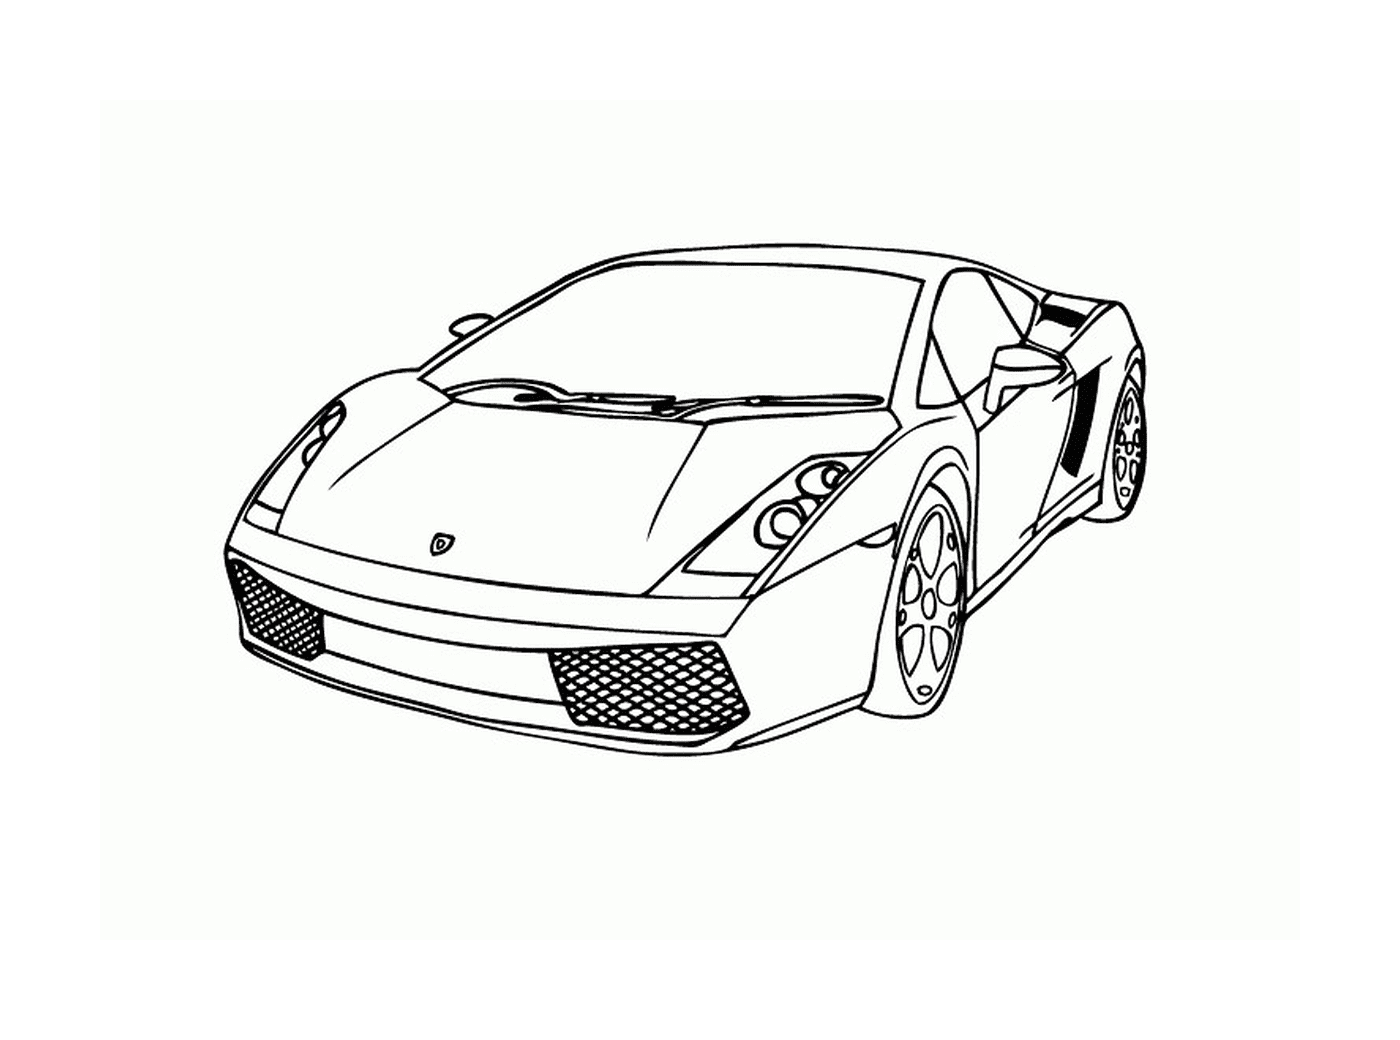  Coches Lamborghini, vista superior 